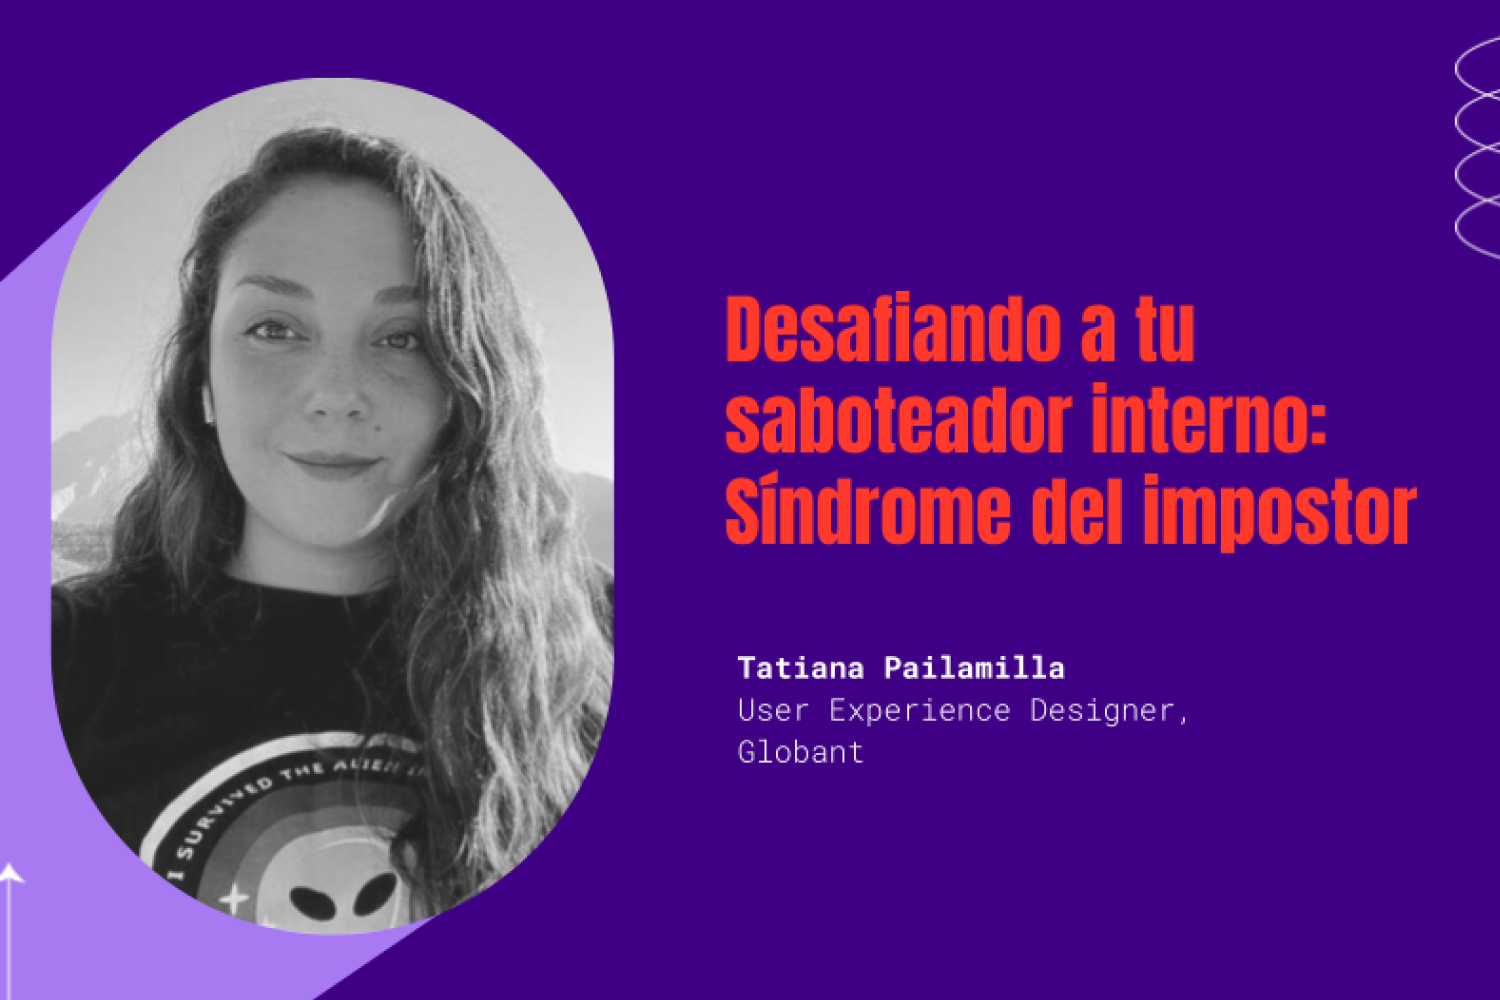 Tatiana Pailamilla, UX Designer en Globant, compartió su experiencia y recomendaciones para gestionar de mejor manera el Síndrome del Impostor.